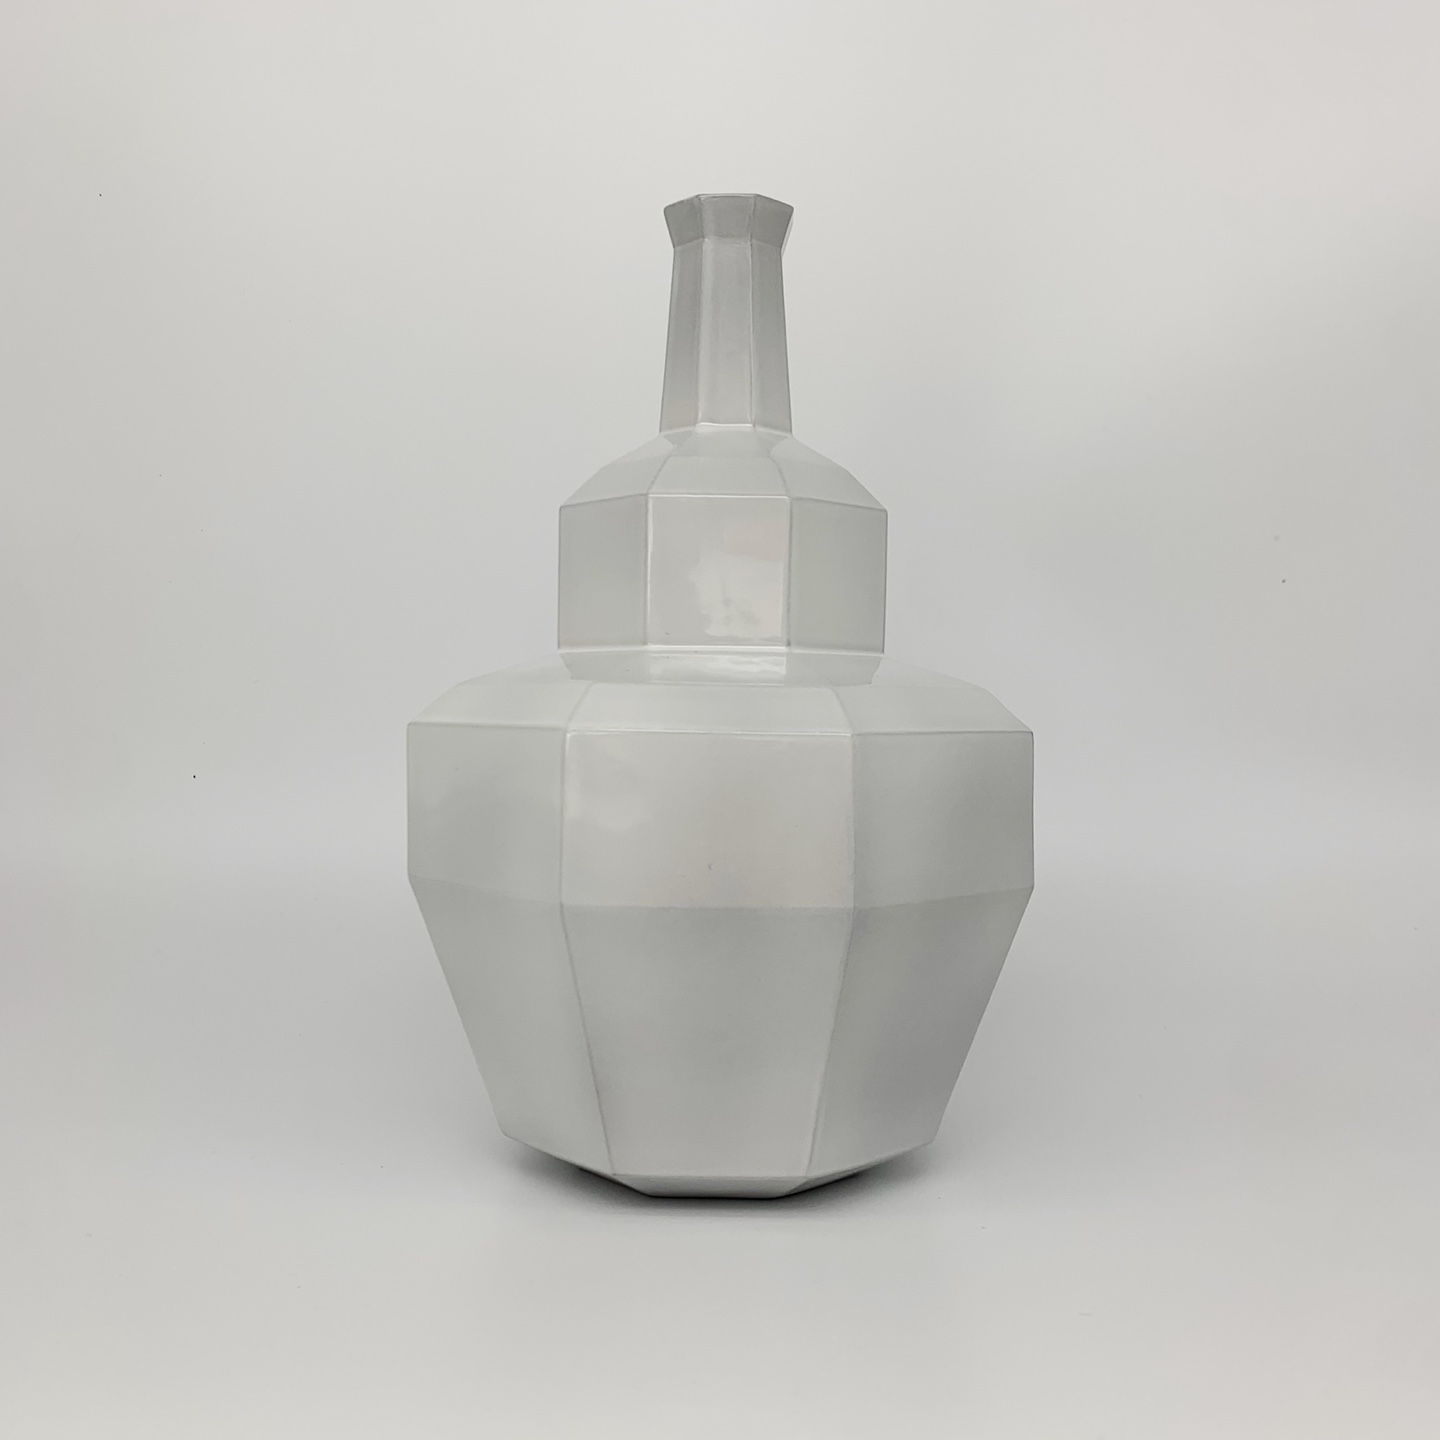 Flower vase 01